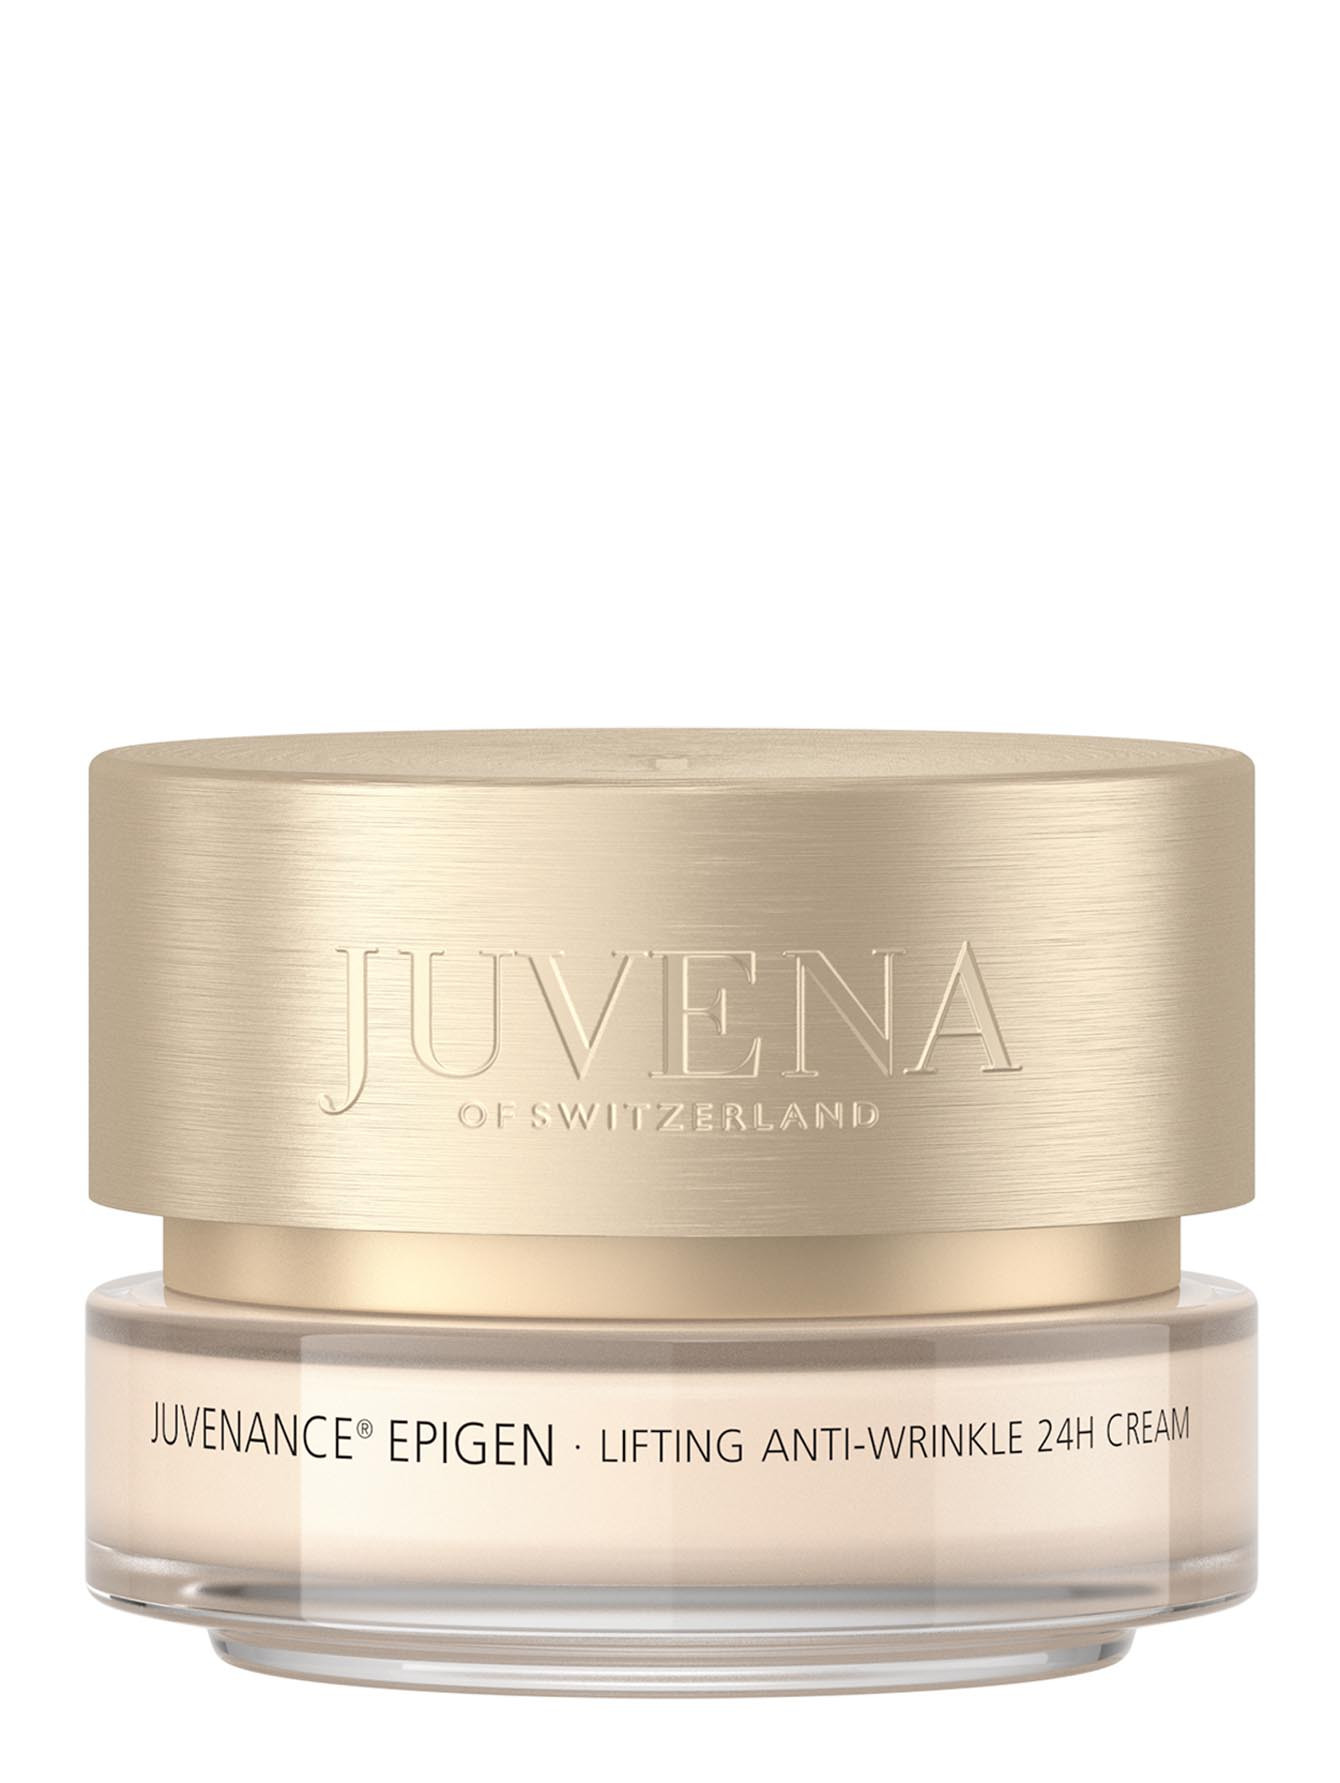 Лифтинг-крем против морщин «24 часа» Juvenance Epigen 24h Cream, 50 мл - Общий вид